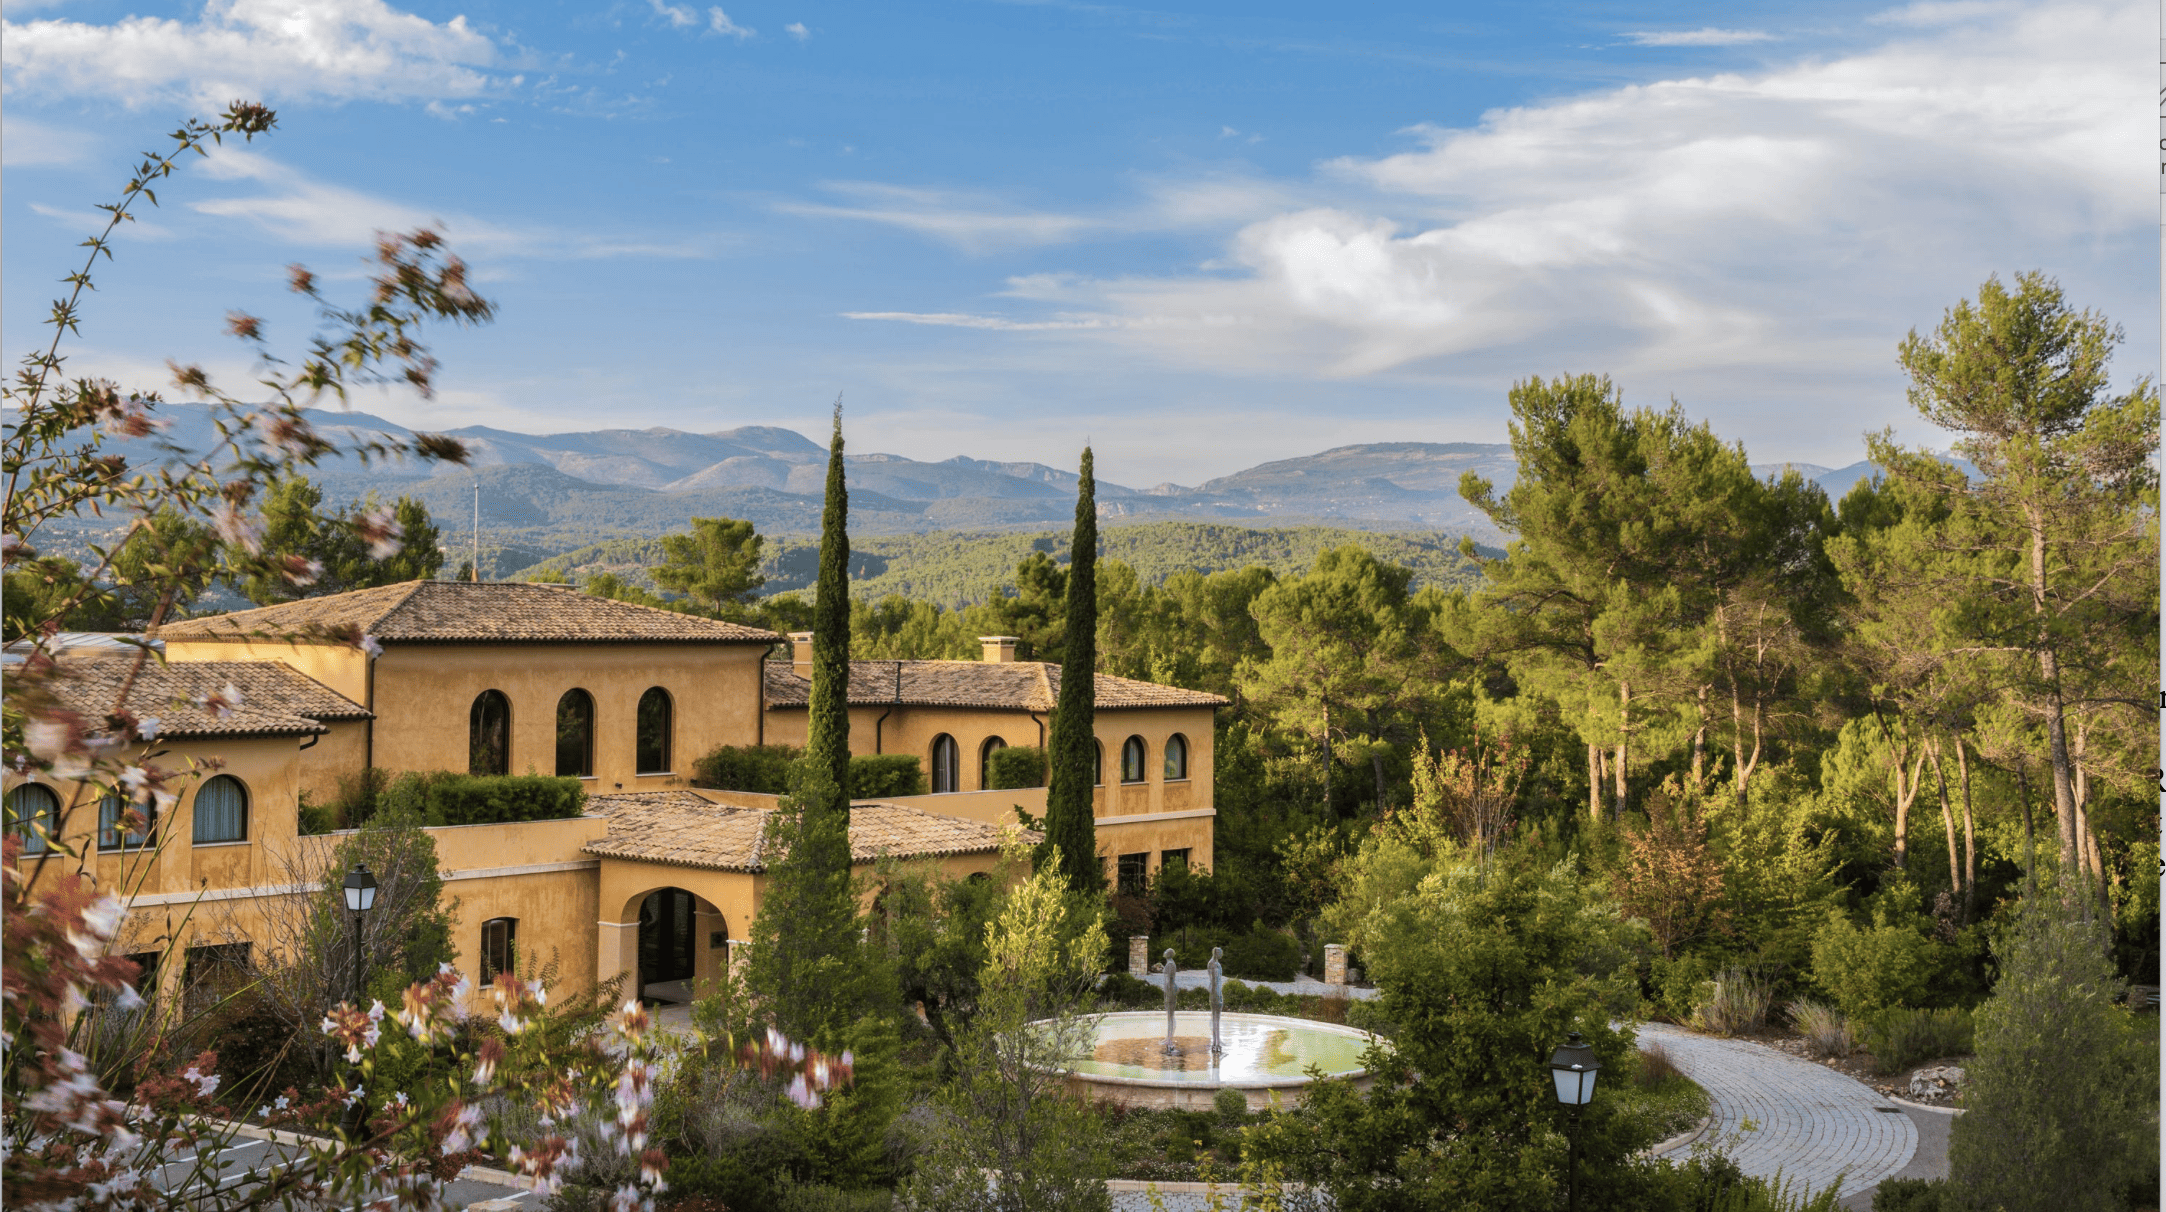 case_ELLE verlost Luxus-Reise in die Provence